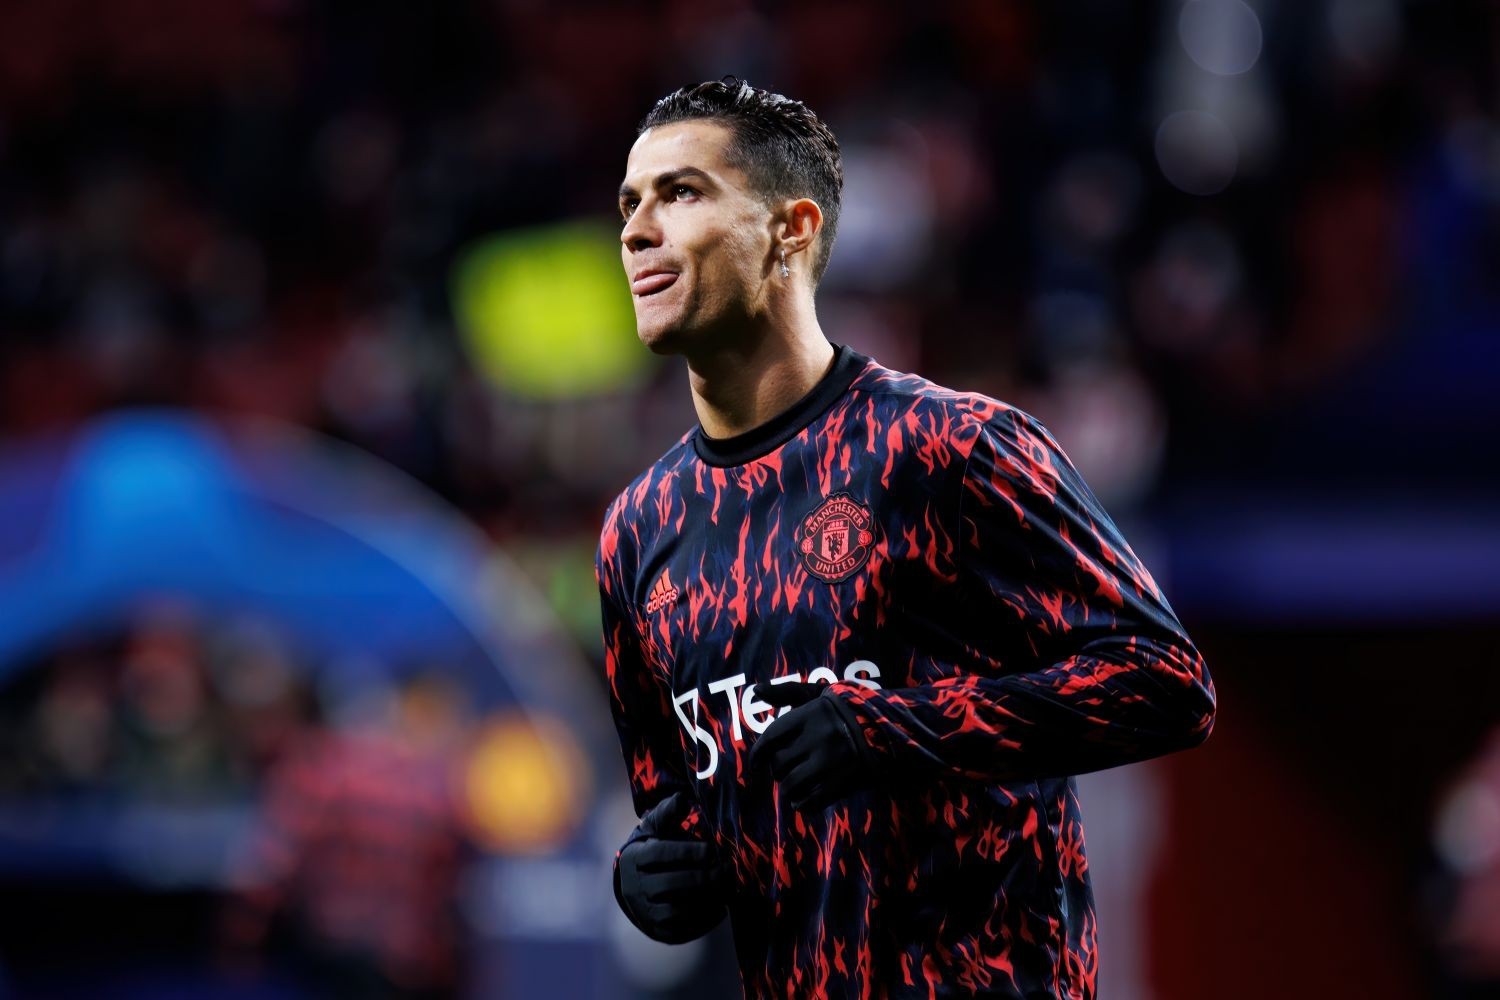 Cristiano Ronaldo z pierwszym golem w sezonie 2022/2023 Transfery.info